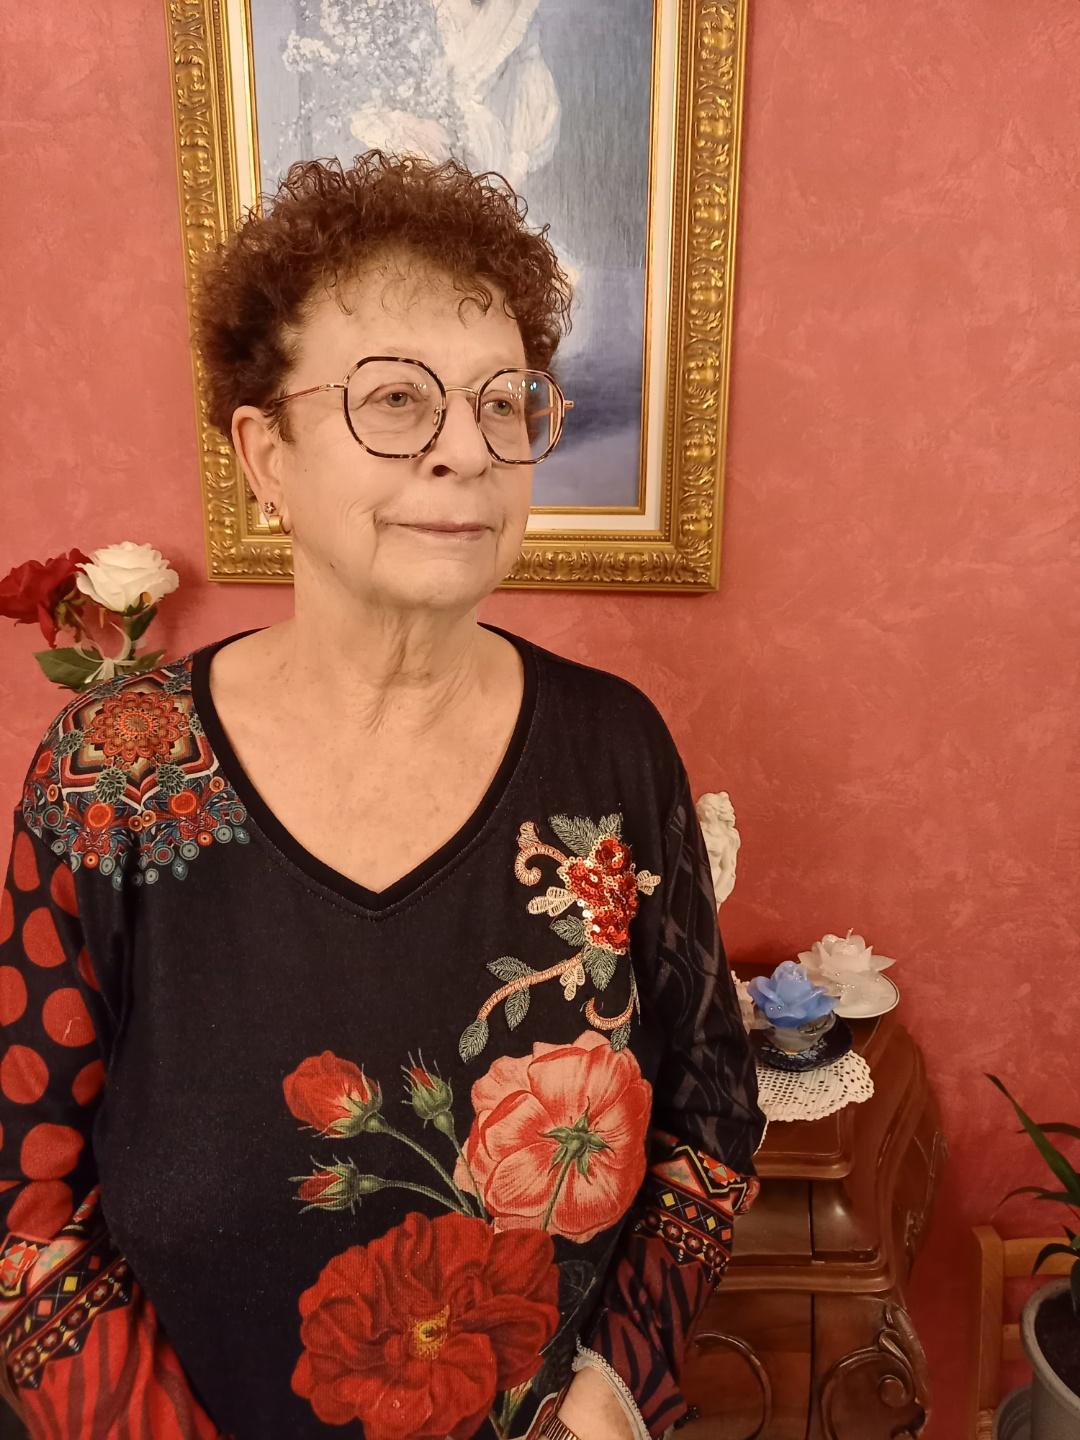 24 février: Suzanne Wira, 80 ans